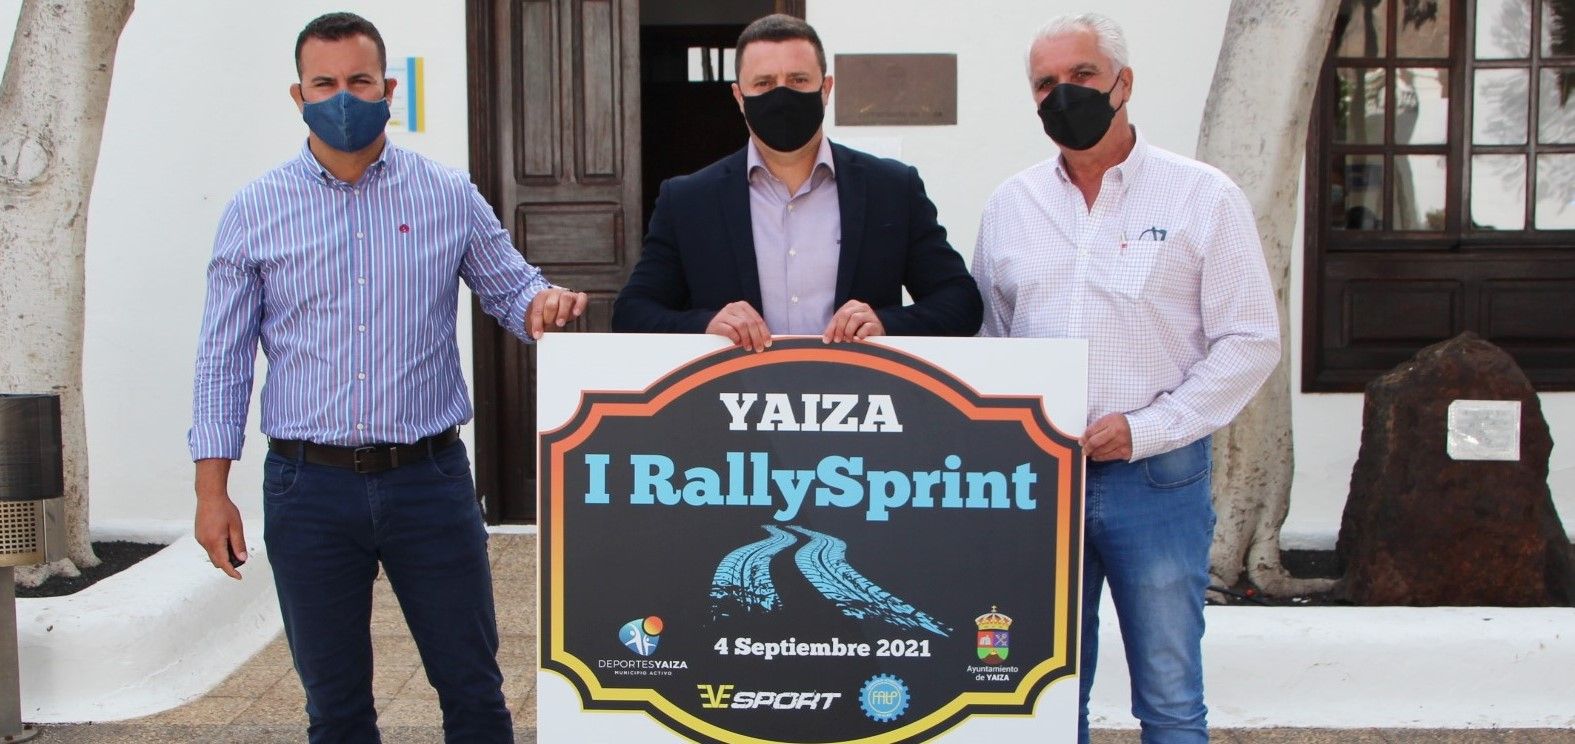 El Campeonato de Canarias de Rallysprint llegará a Yaiza el 4 de septiembre